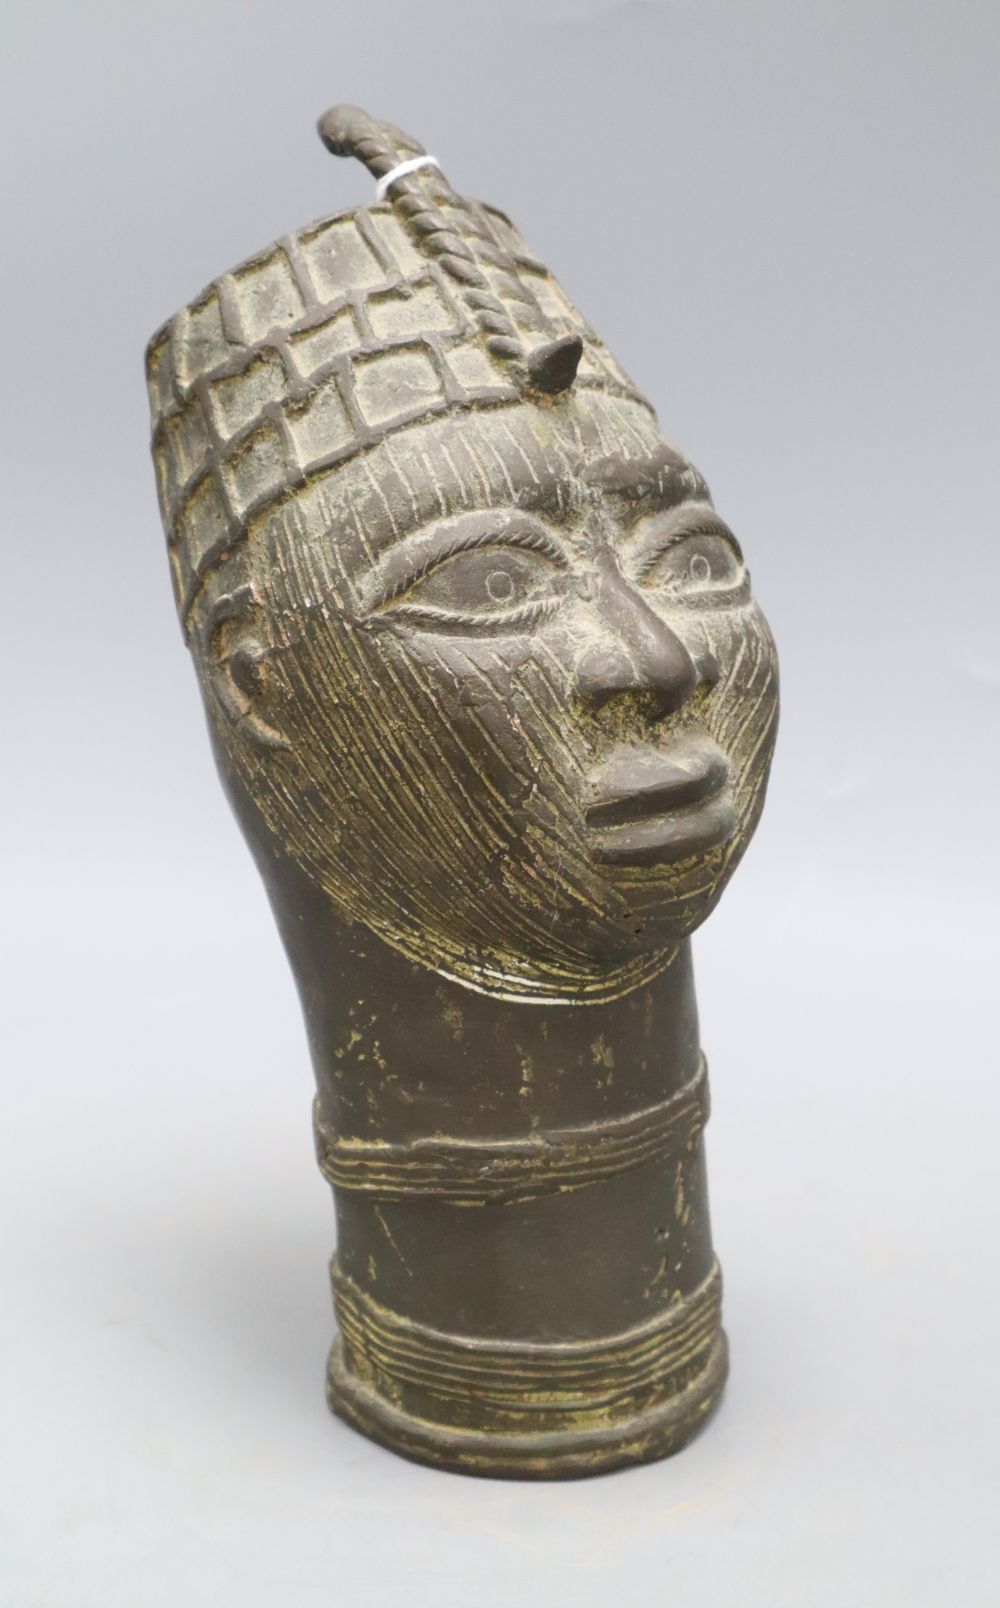 A Benin style bronze bust, height 27cm